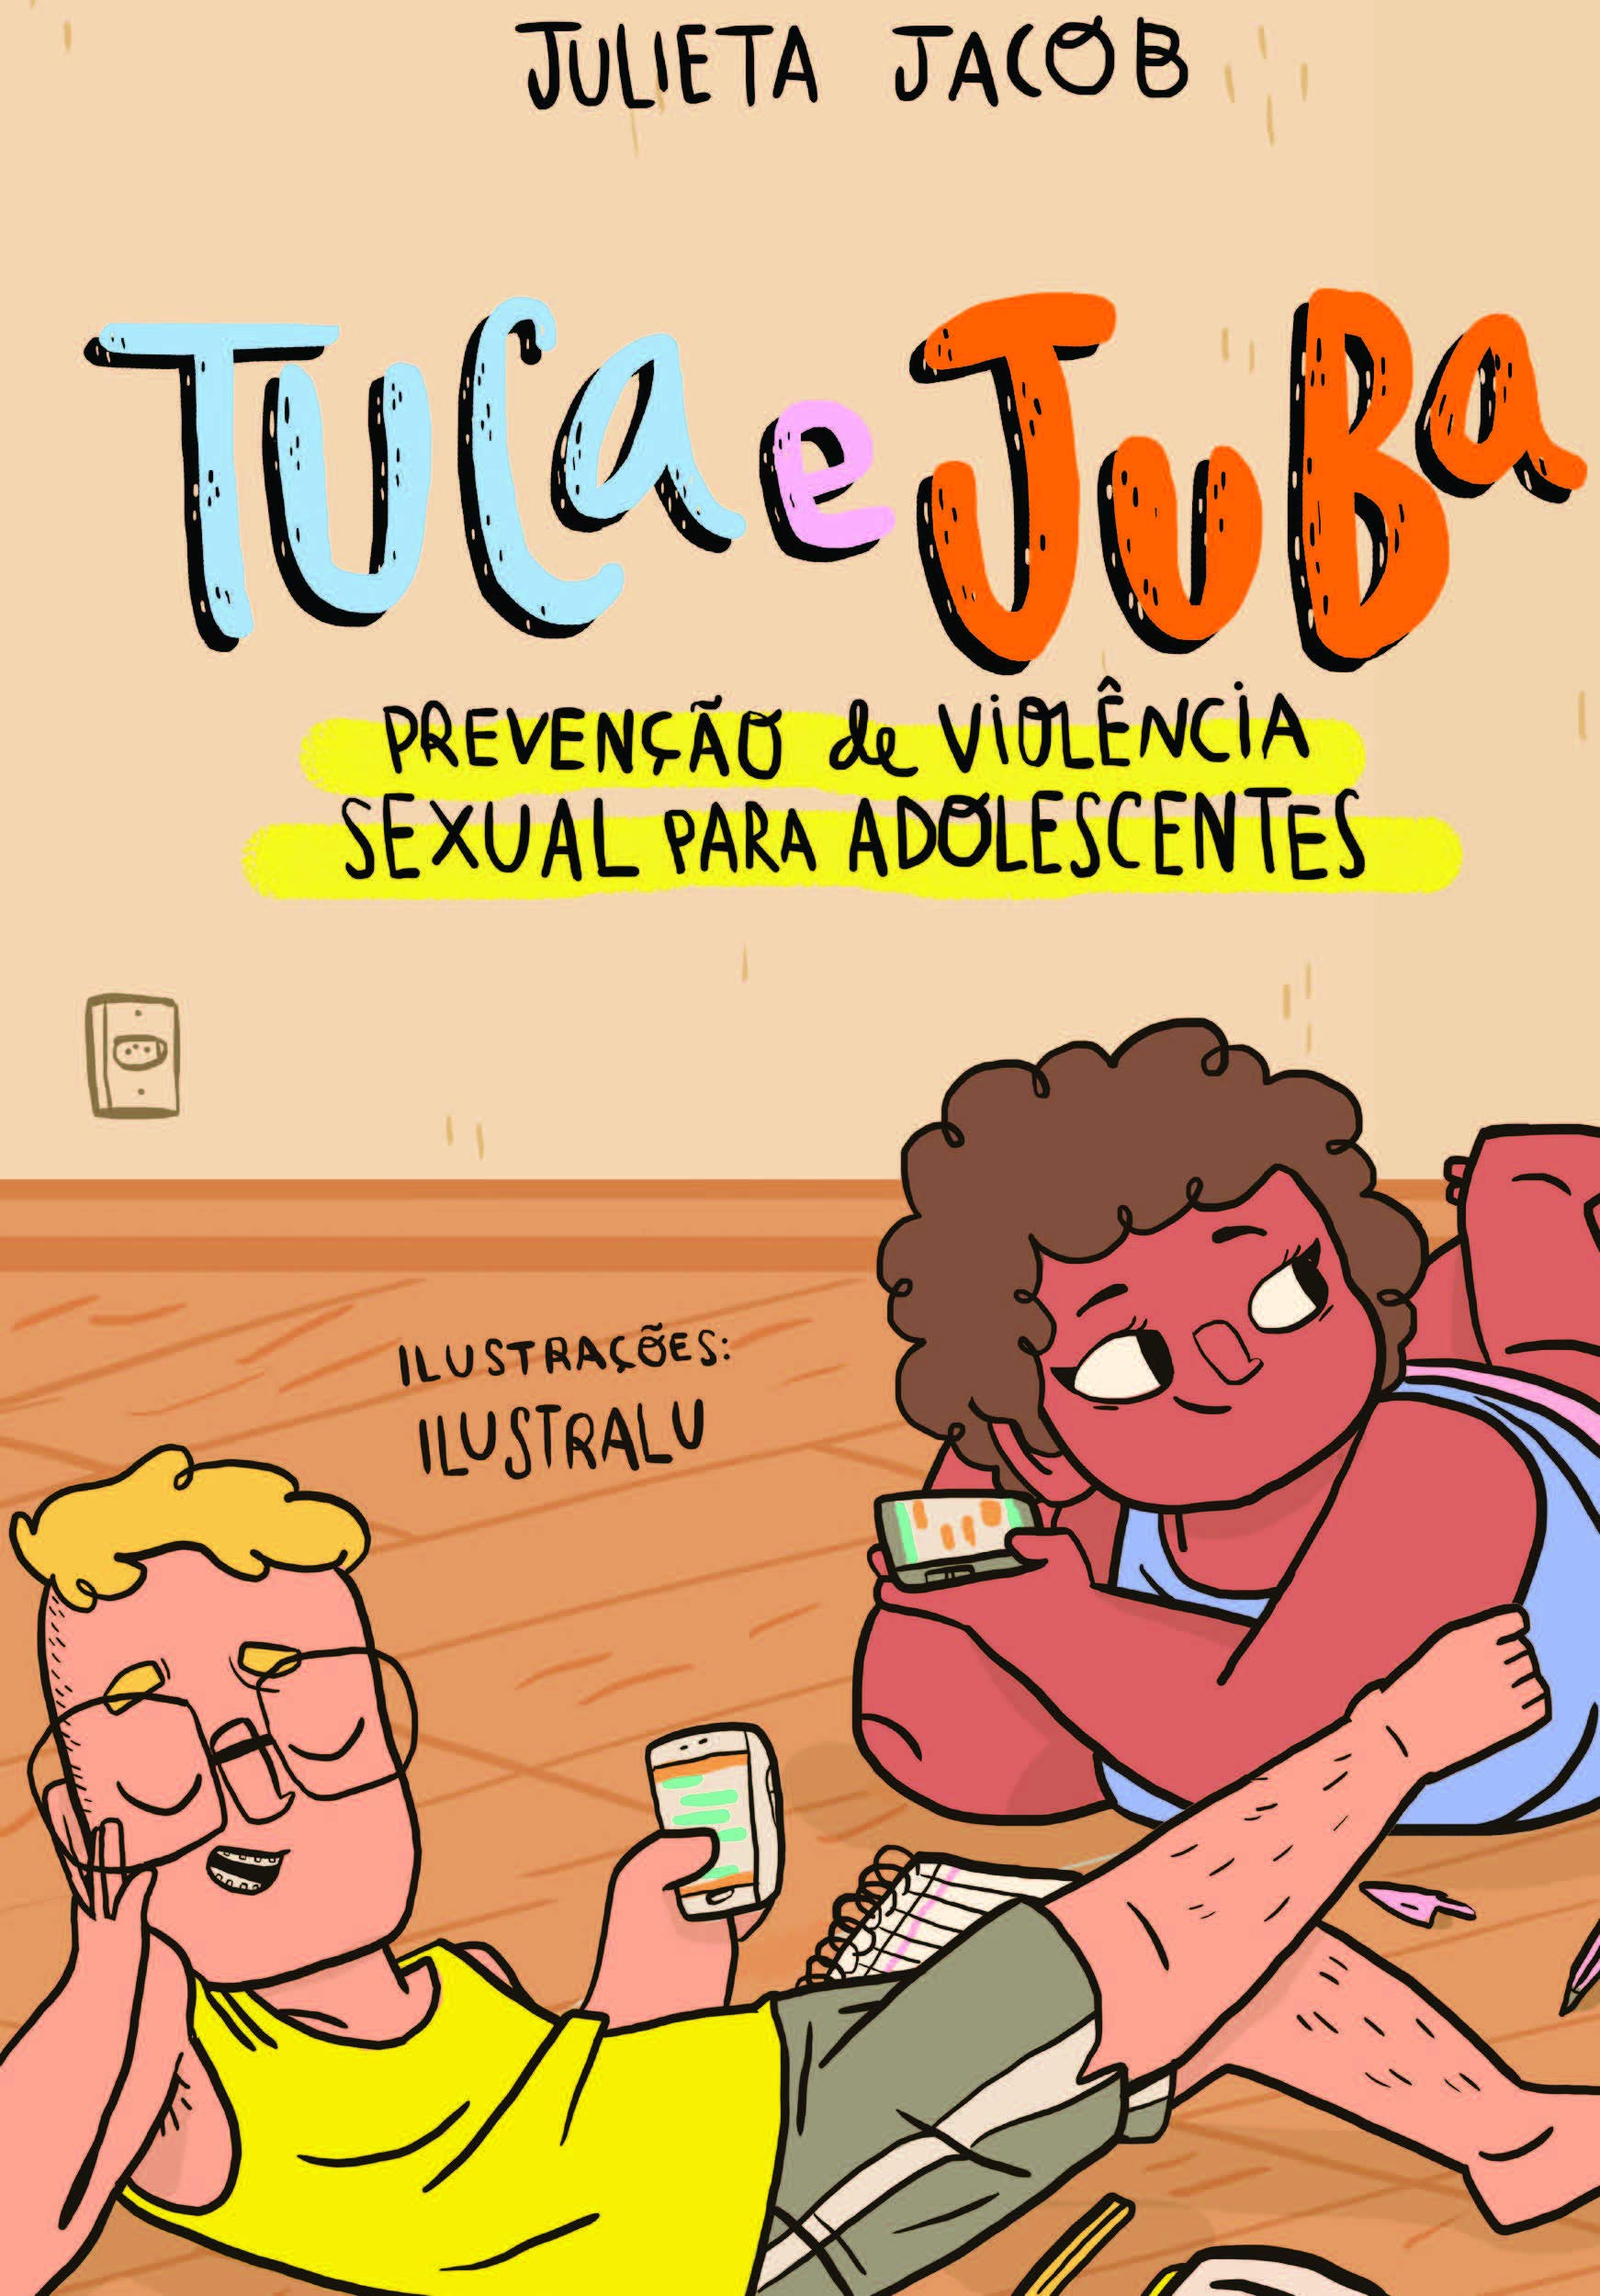 Capa do livro “Tuca e Juba” de Julieta Jacob, ilustração de um menino de óculos com celular na mão e uma menina deitada com celular